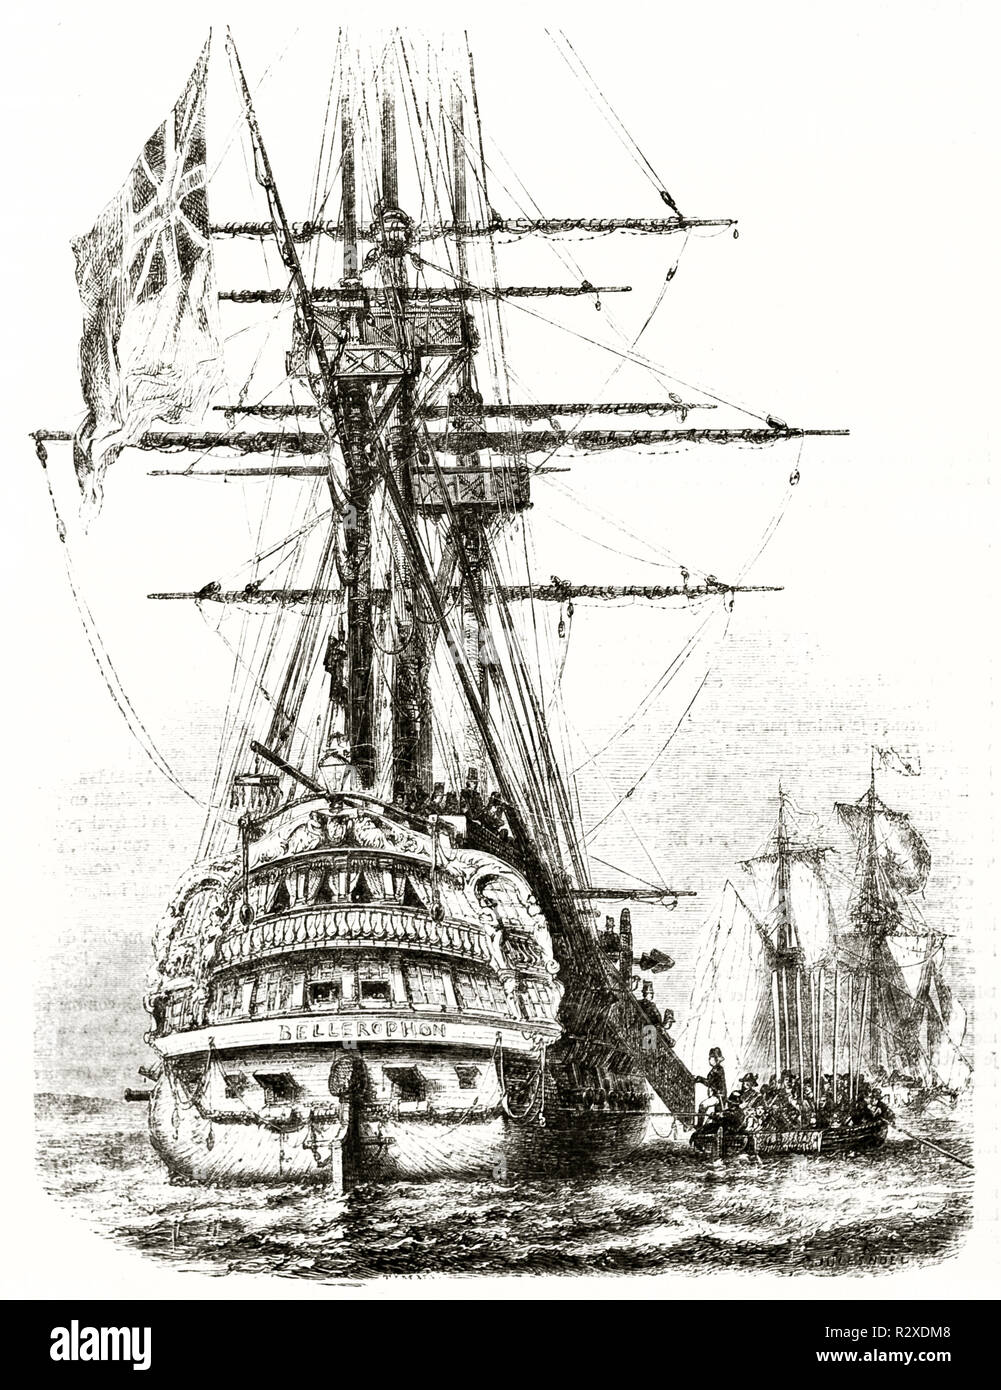 Vecchio, illustrazione di HMS Bellerofon, Royal Navy ship (imbarco Napoleone rinuncia). Da autore non identificato, publ. su Magasin pittoresco, Parigi, 1846 Foto Stock